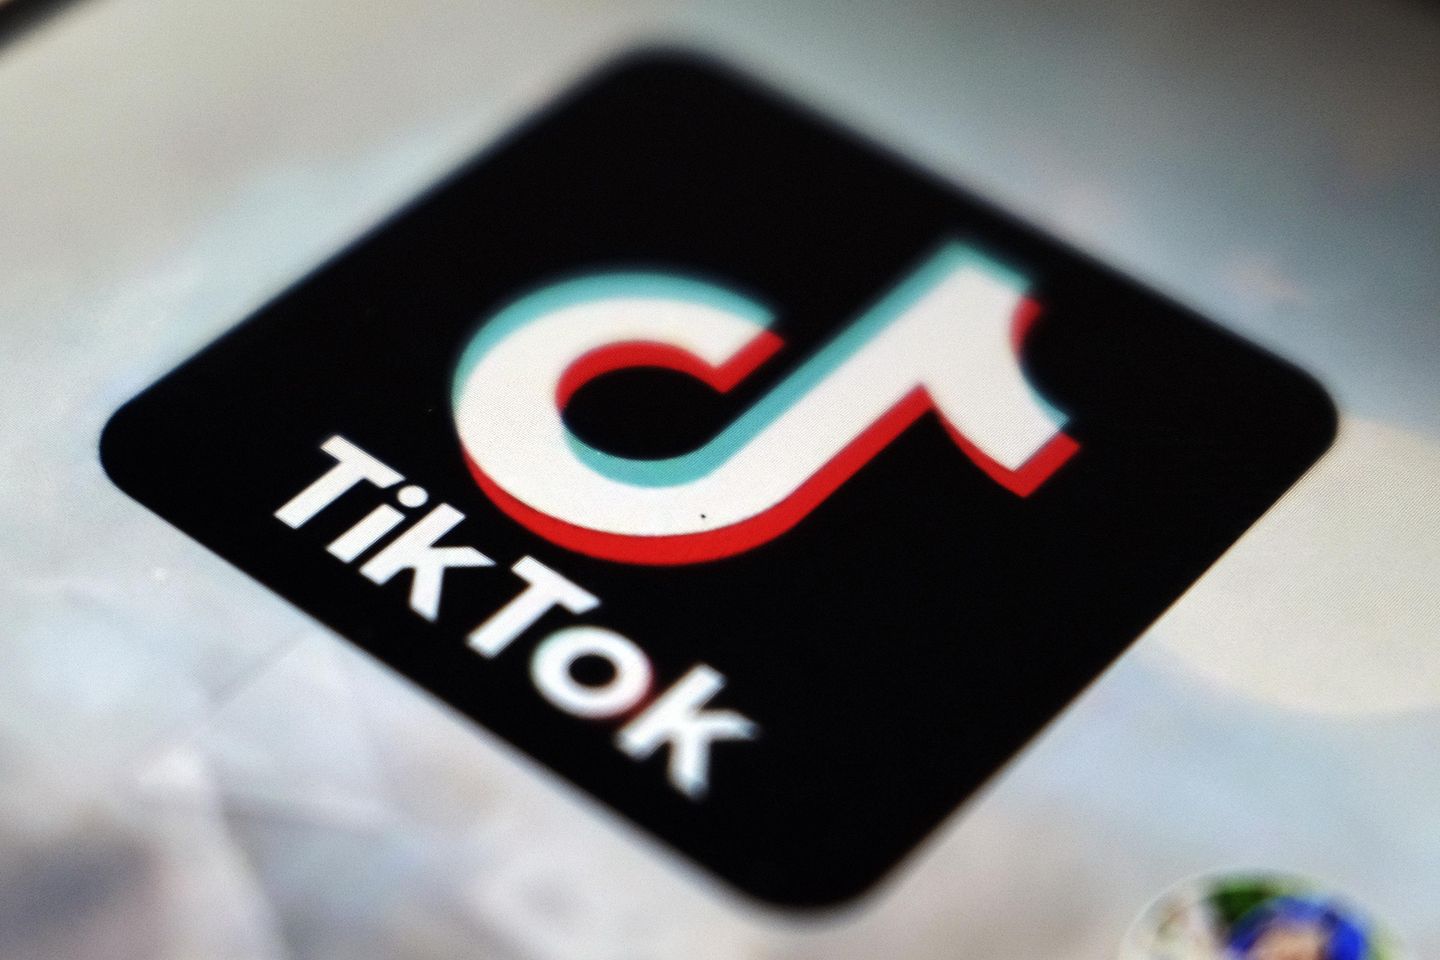 Resultados de búsqueda de TikTok plagados de información errónea: Informe